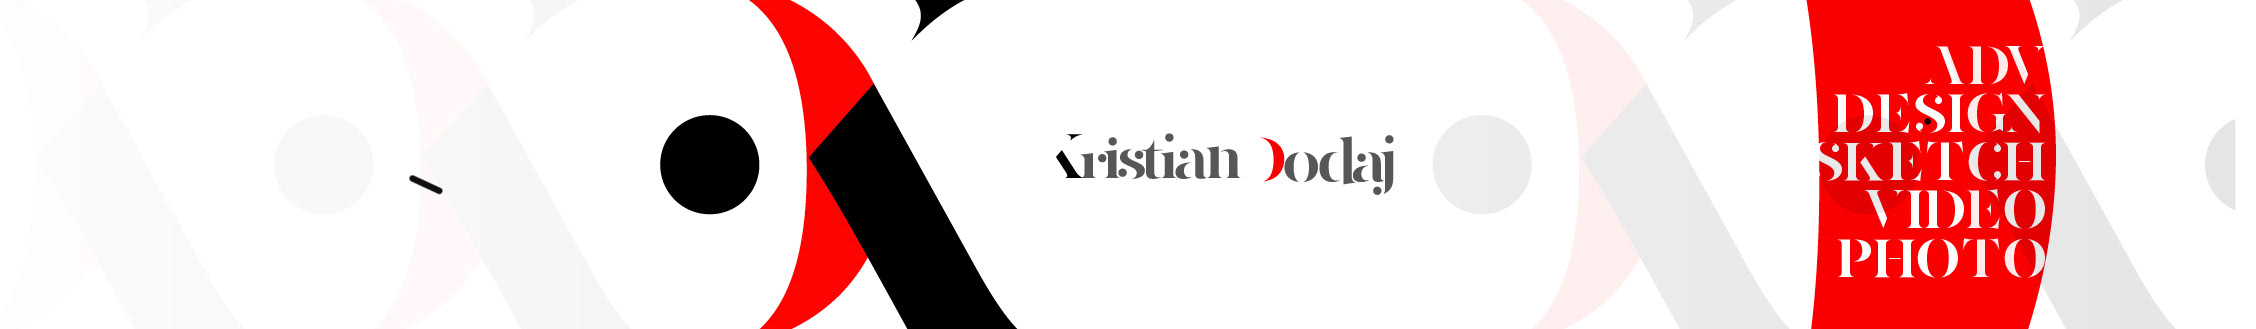 Kristian Dodaj's profile banner